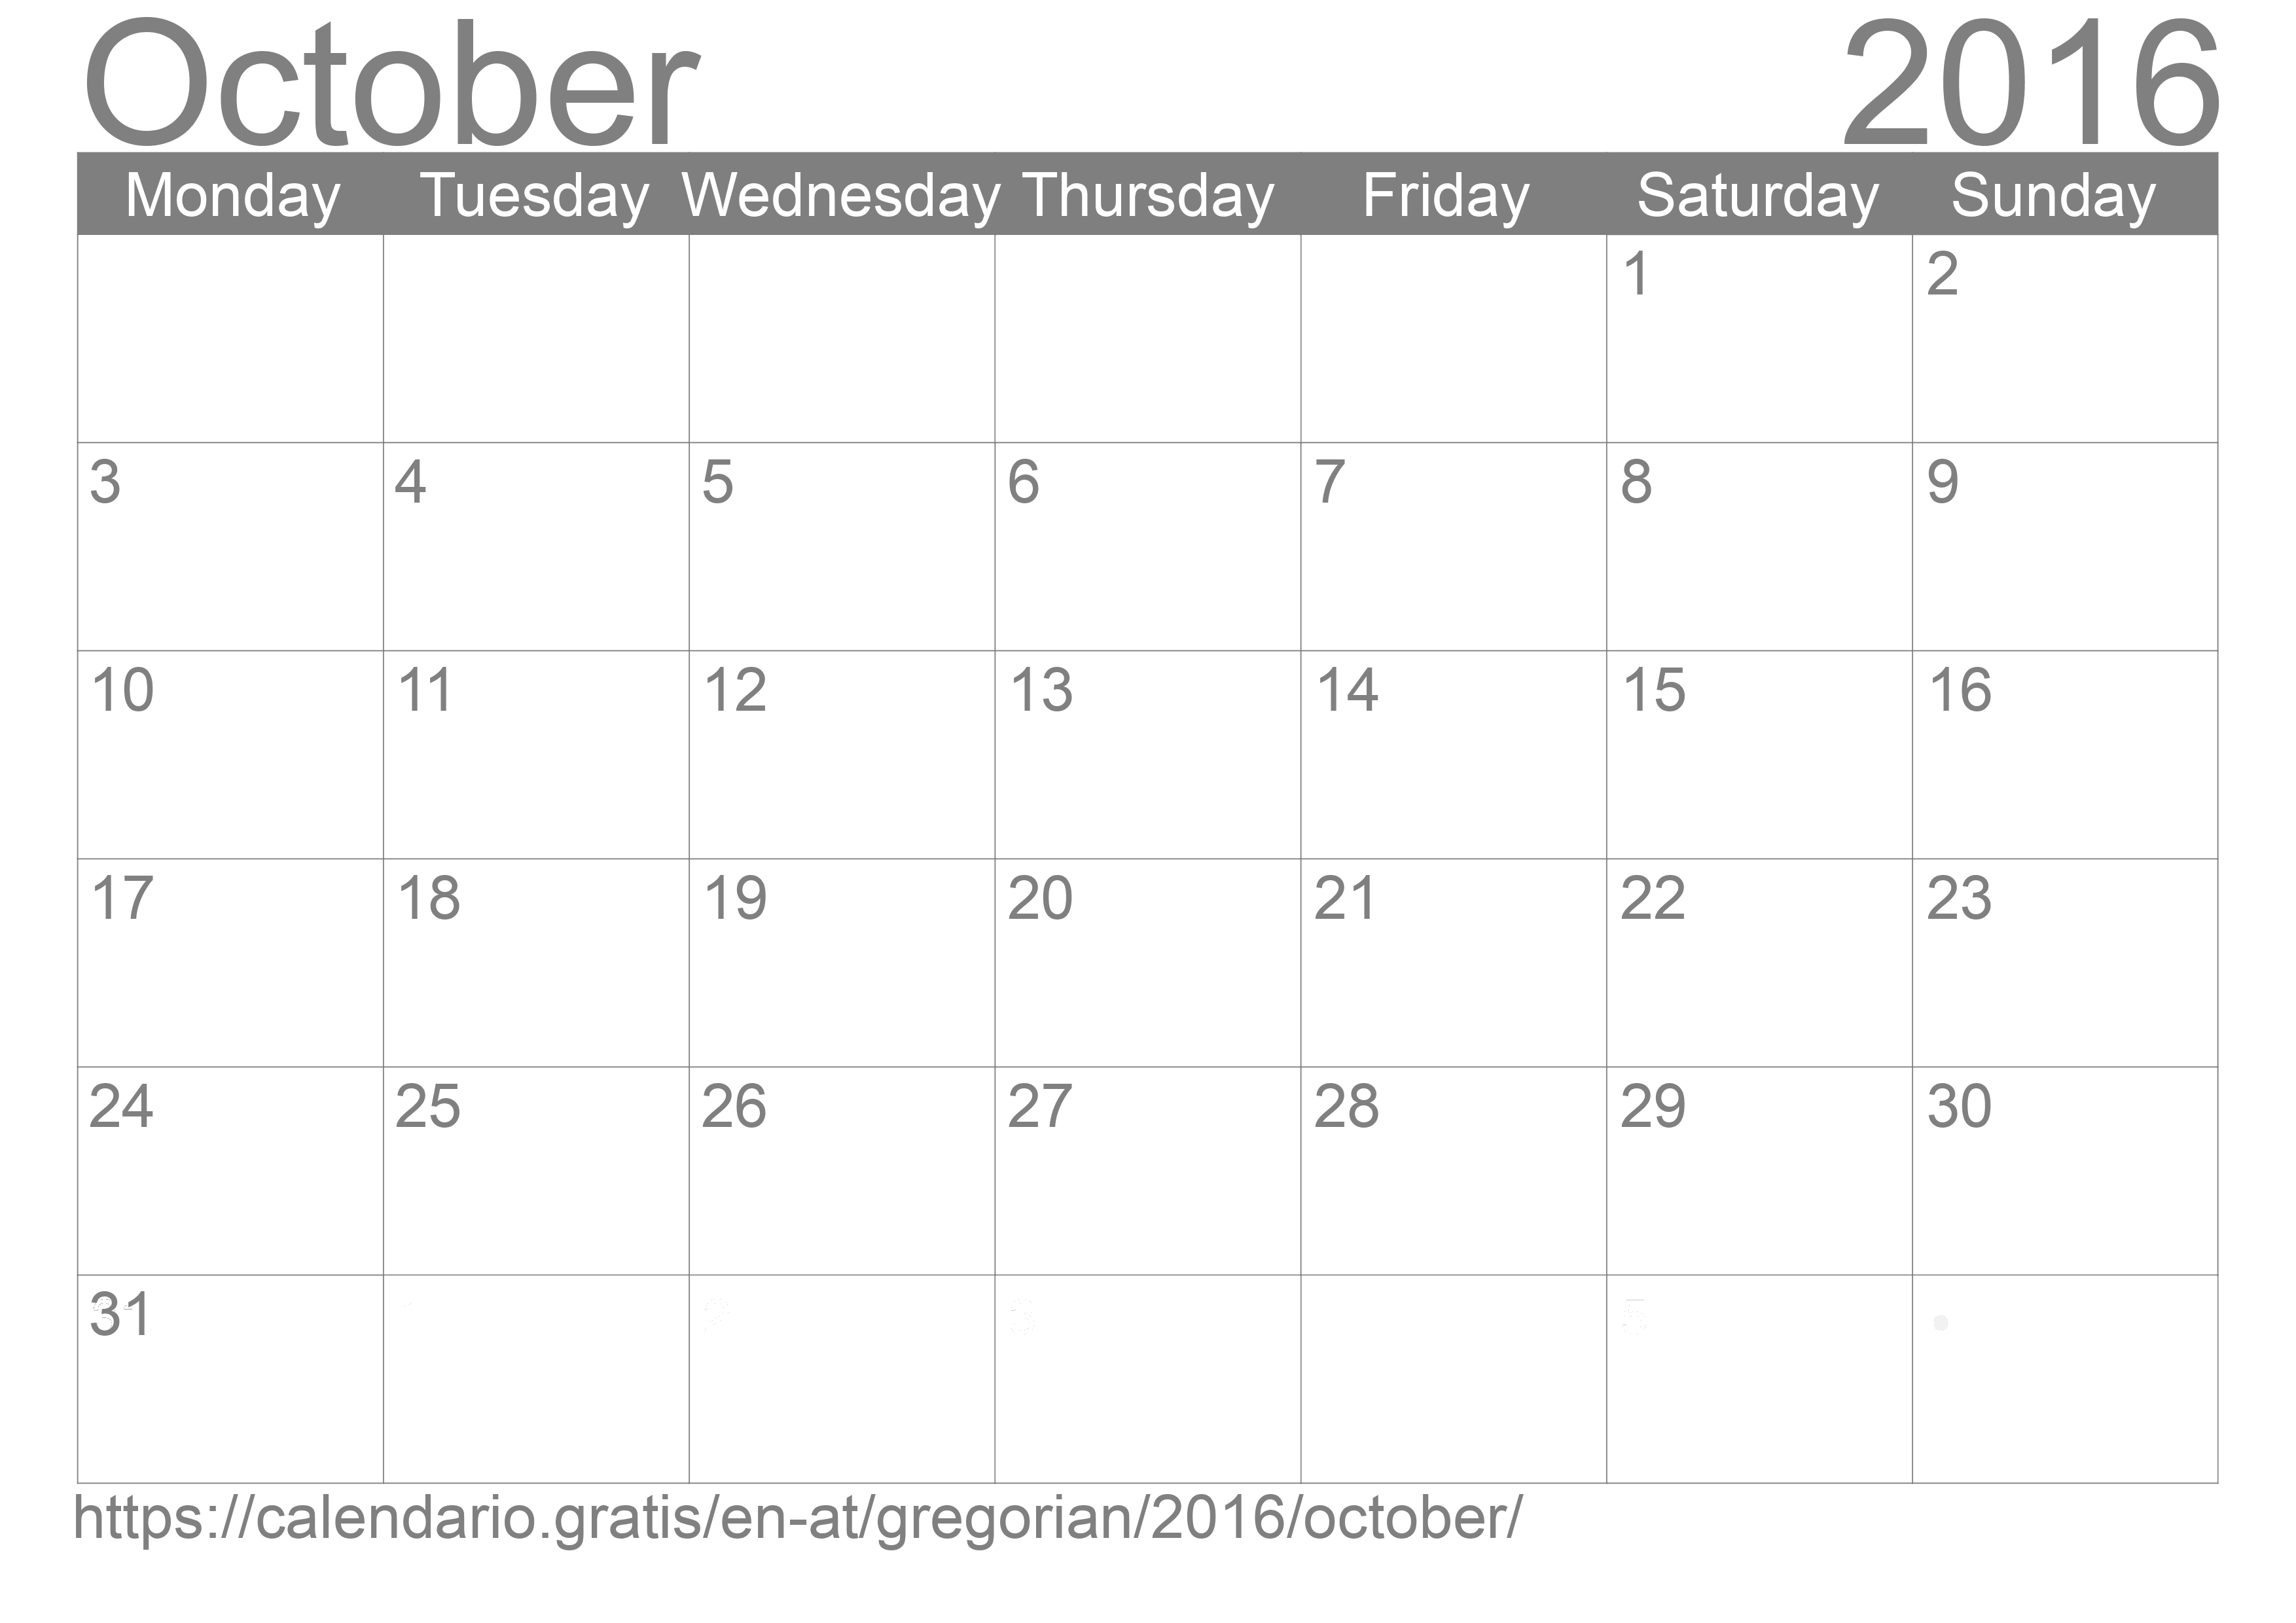 Calendar October 2016 to print